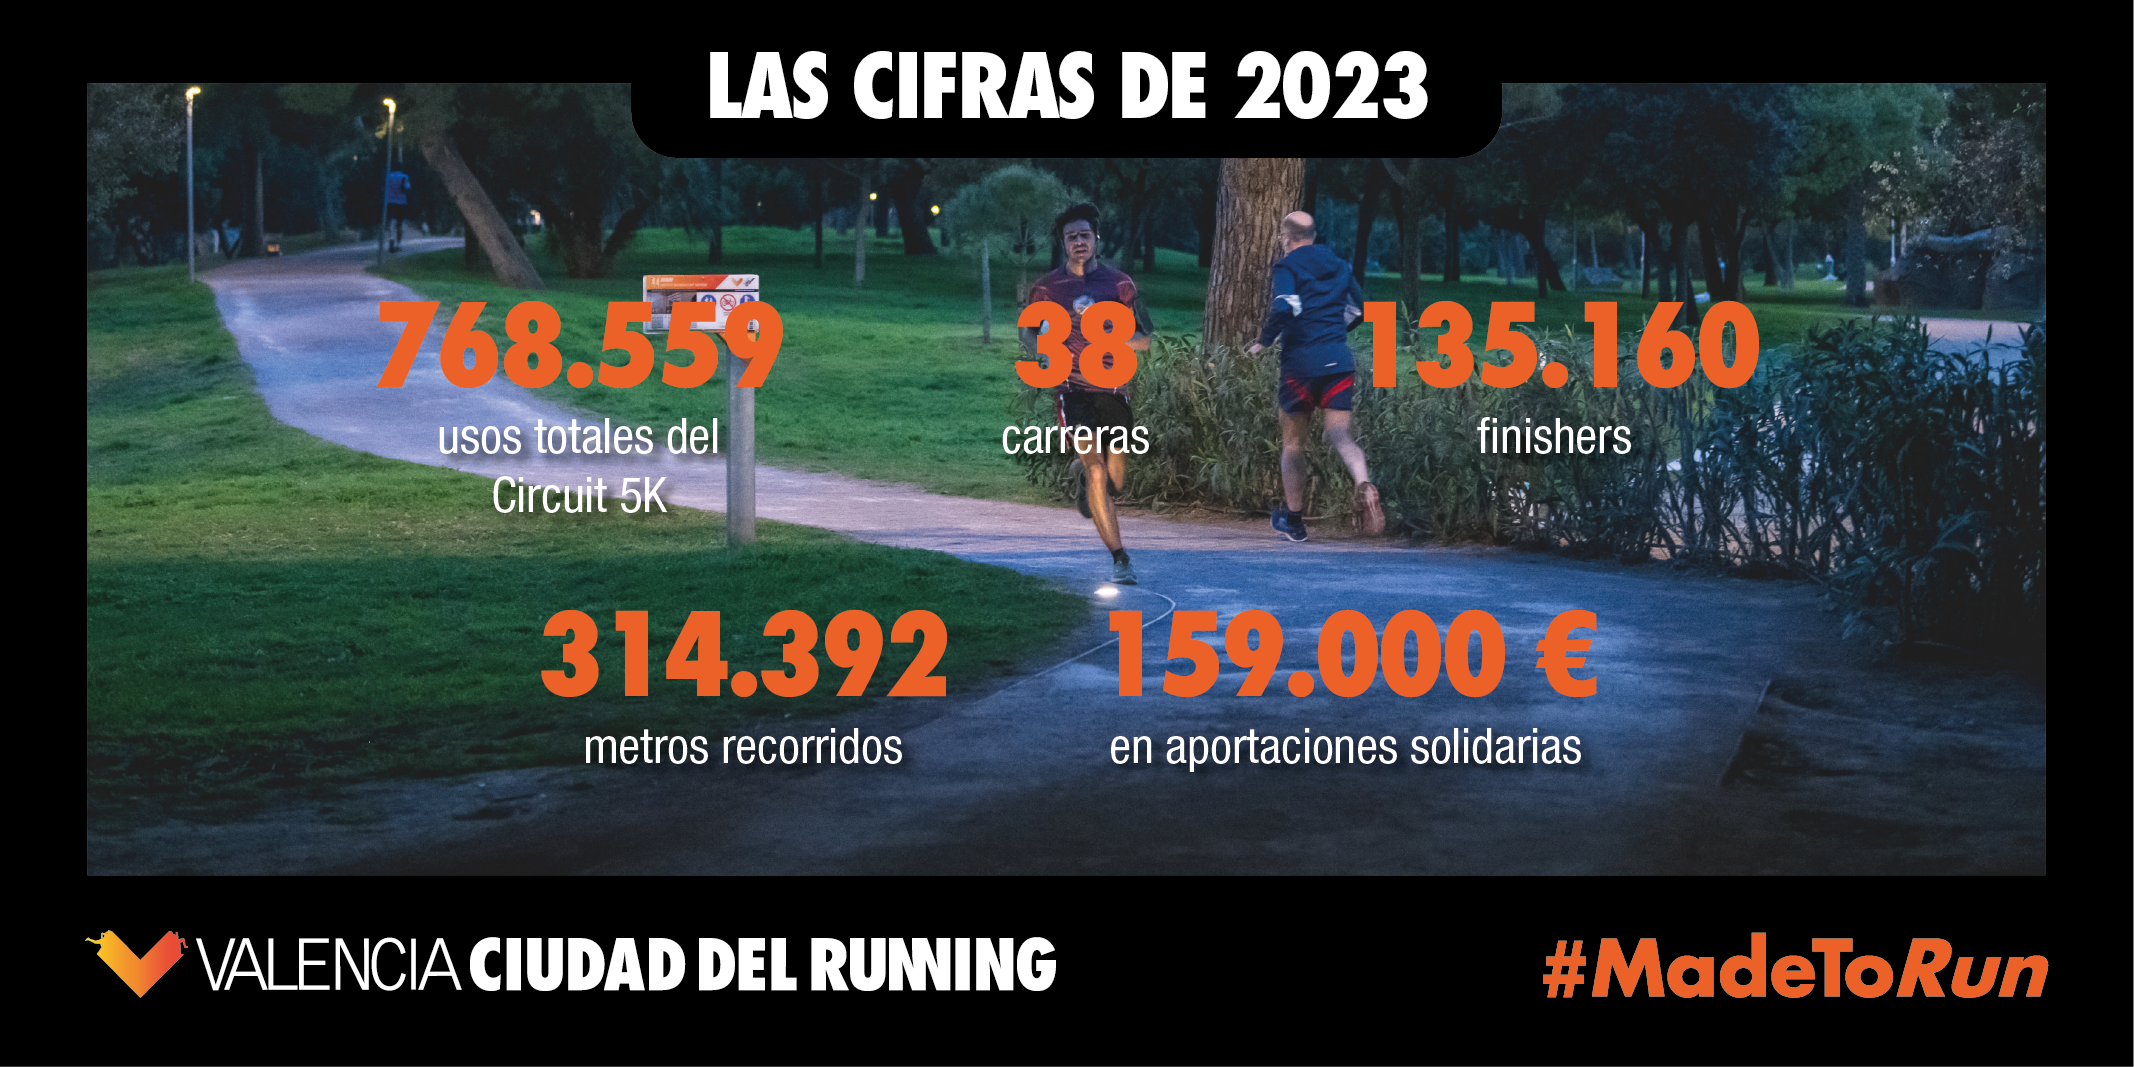 Valencia Ciudad del Running superó los 135.000 finishers en las 38 carreras de 2023 post thumbnail image